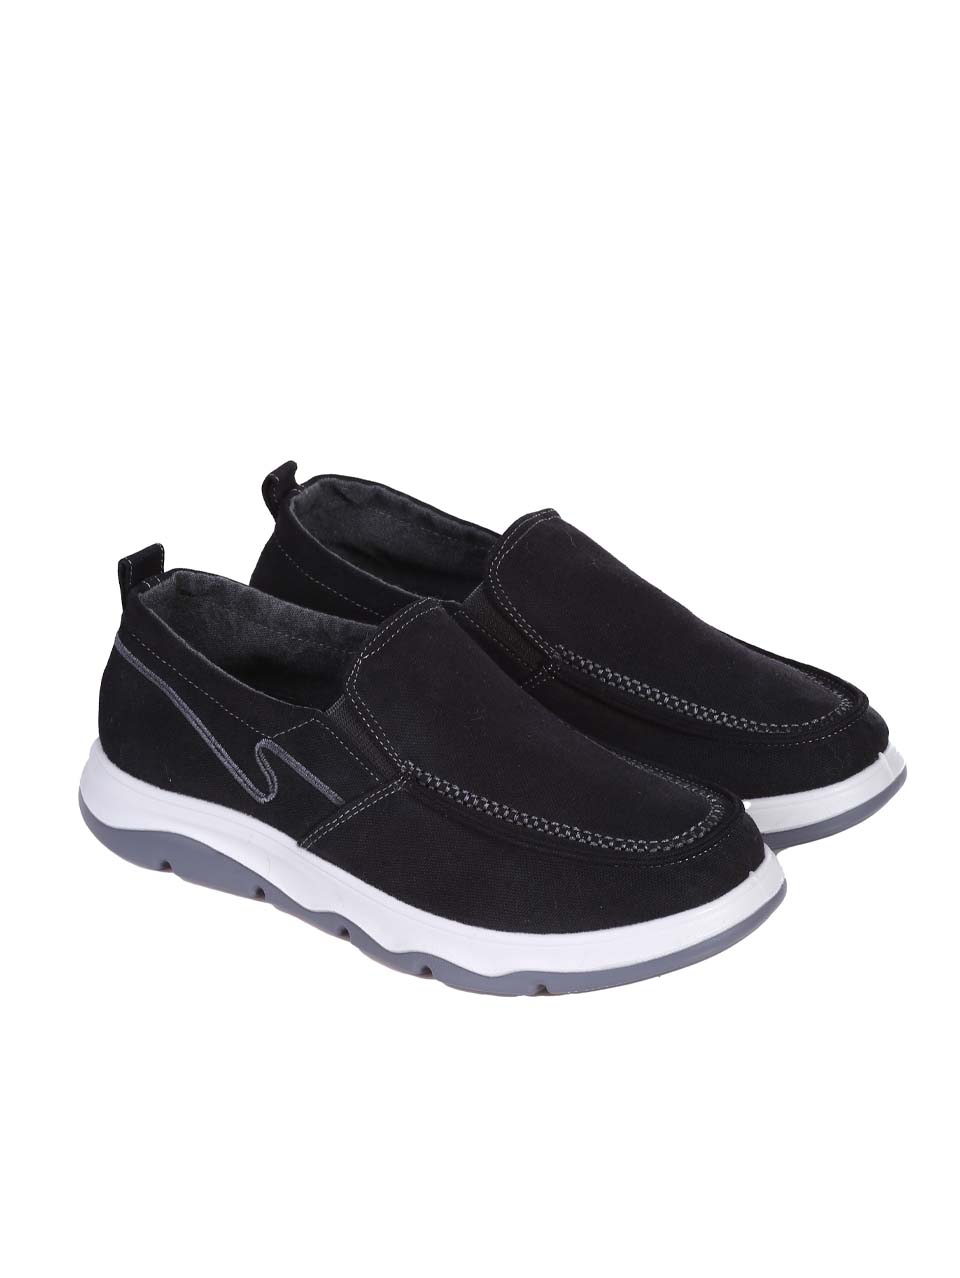 Ежедневни мъжки обувки в черно 7H-24188 black